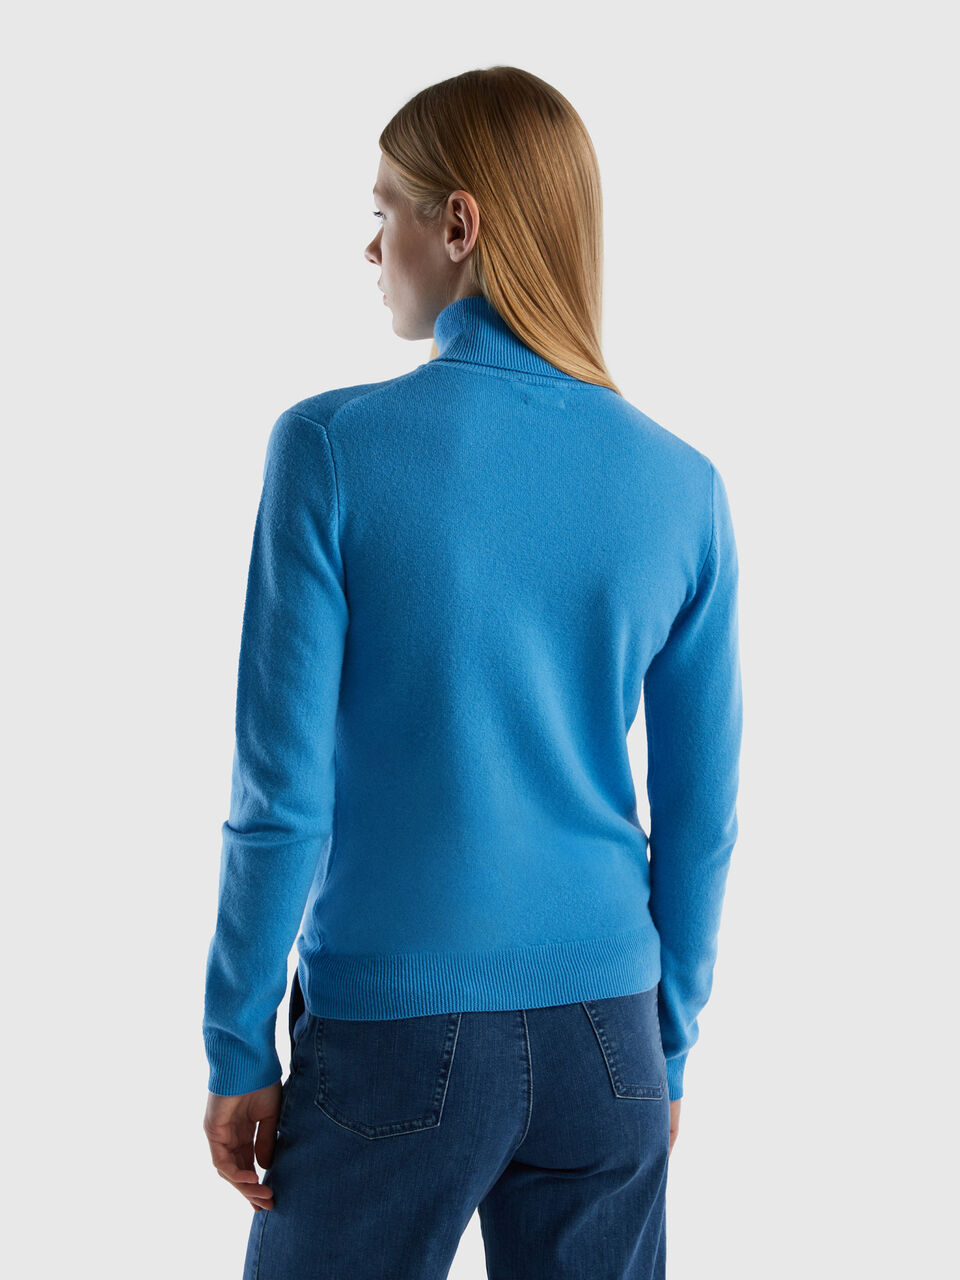 Merino Wool Sweater, Women's Powder High Neck